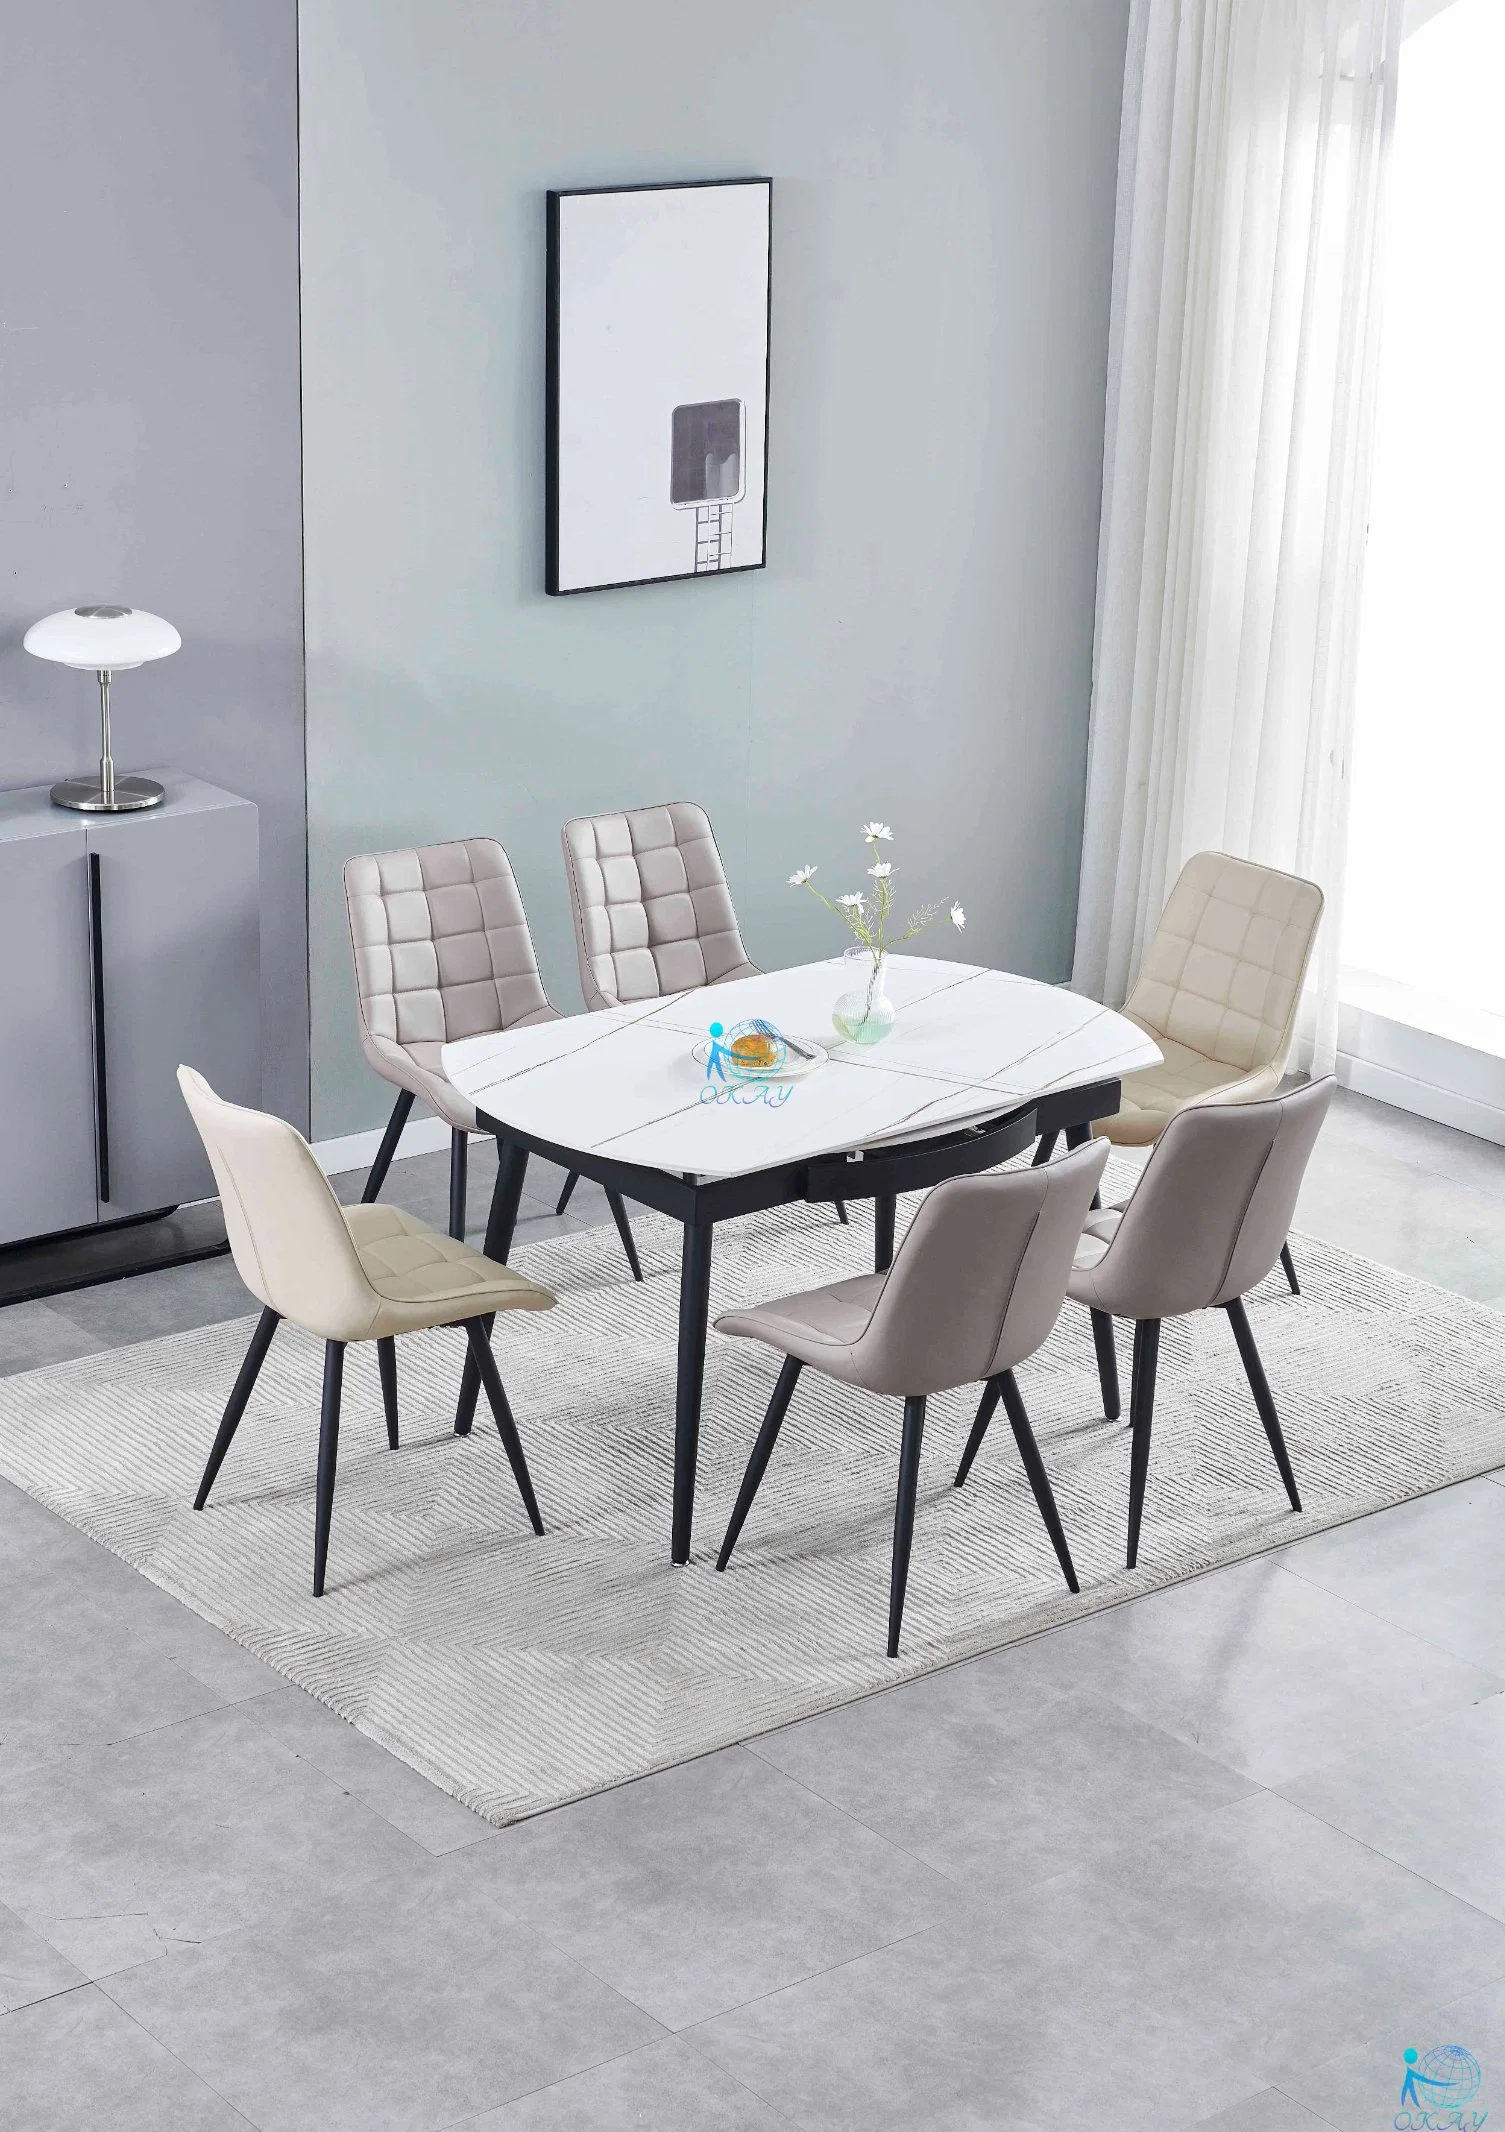 Mobiliário doméstico durante todo em mármore branco tampos de mesa em mármore, mesa de jantar